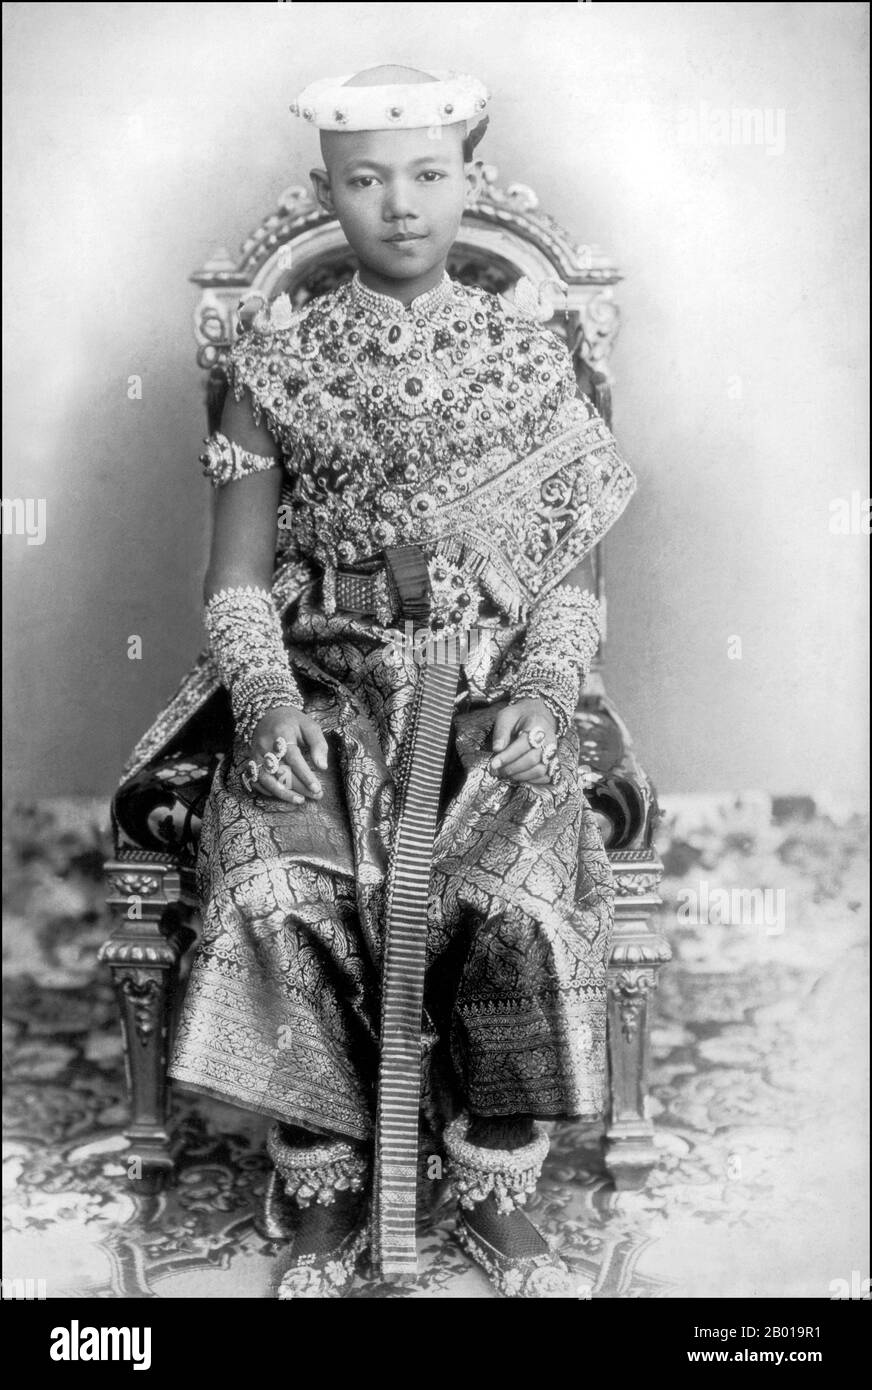 Thaïlande: Le roi Ananda Mahidol (20 septembre 1925 – 9 juin 1946) comme enfant, 1930. Ananda Mahidol, également connu sous le nom de Rama VIII, était le huitième monarque de Thaïlande sous la Maison de Chakri. Il a été reconnu roi par l'Assemblée nationale en mars 1935. Il était un garçon de neuf ans vivant en Suisse à cette époque. Il est retourné en Thaïlande en décembre 1945, mais est mort dans des circonstances mystérieuses en 1946. Banque D'Images